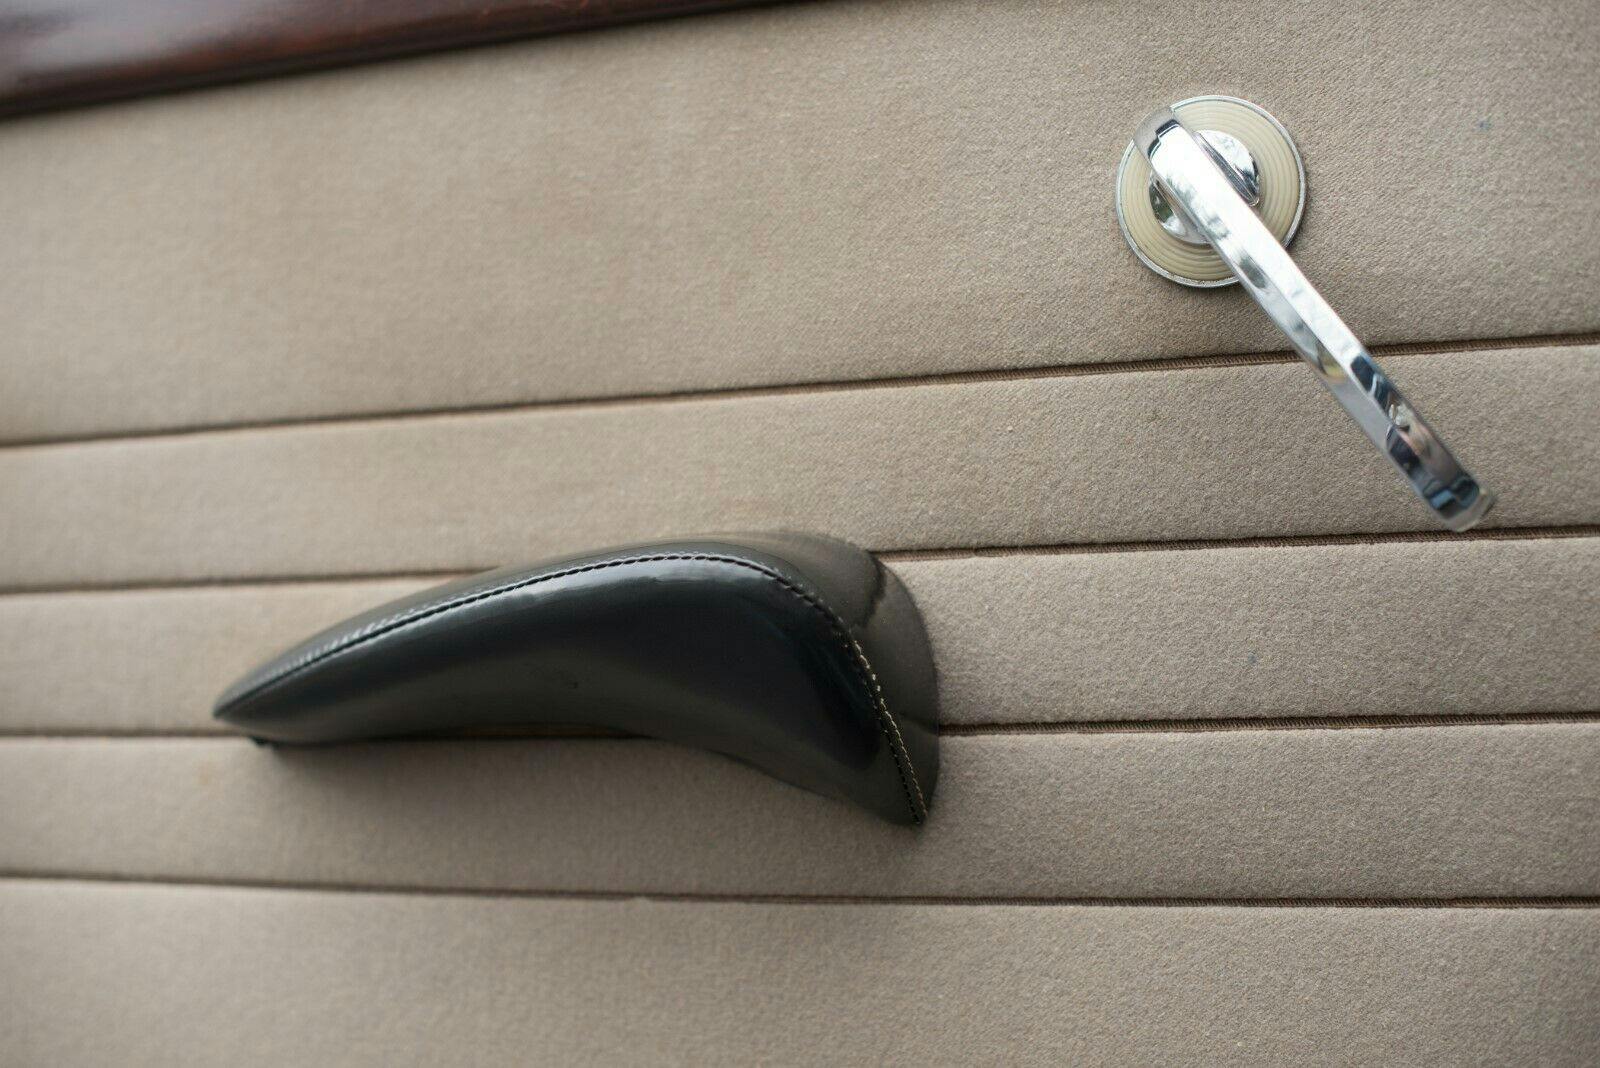 1949 Packard Deluxe Club Sedan - Close-up interior door handle